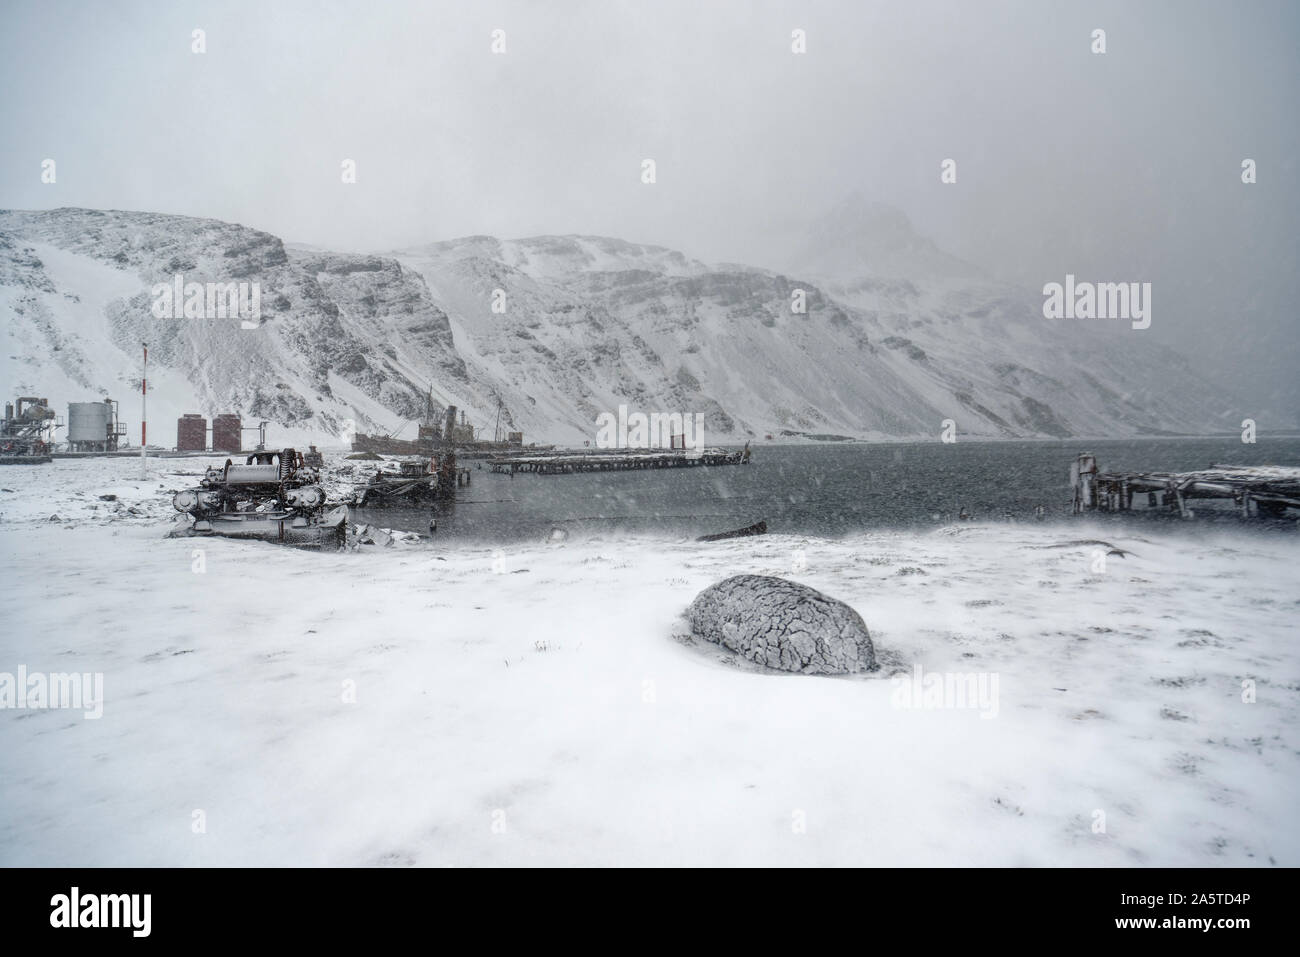 Grytviken, una estación ballenera abandonada, en un paisaje nevado mientras la nieve cae, Georgia del Sur, la Antártida Foto de stock